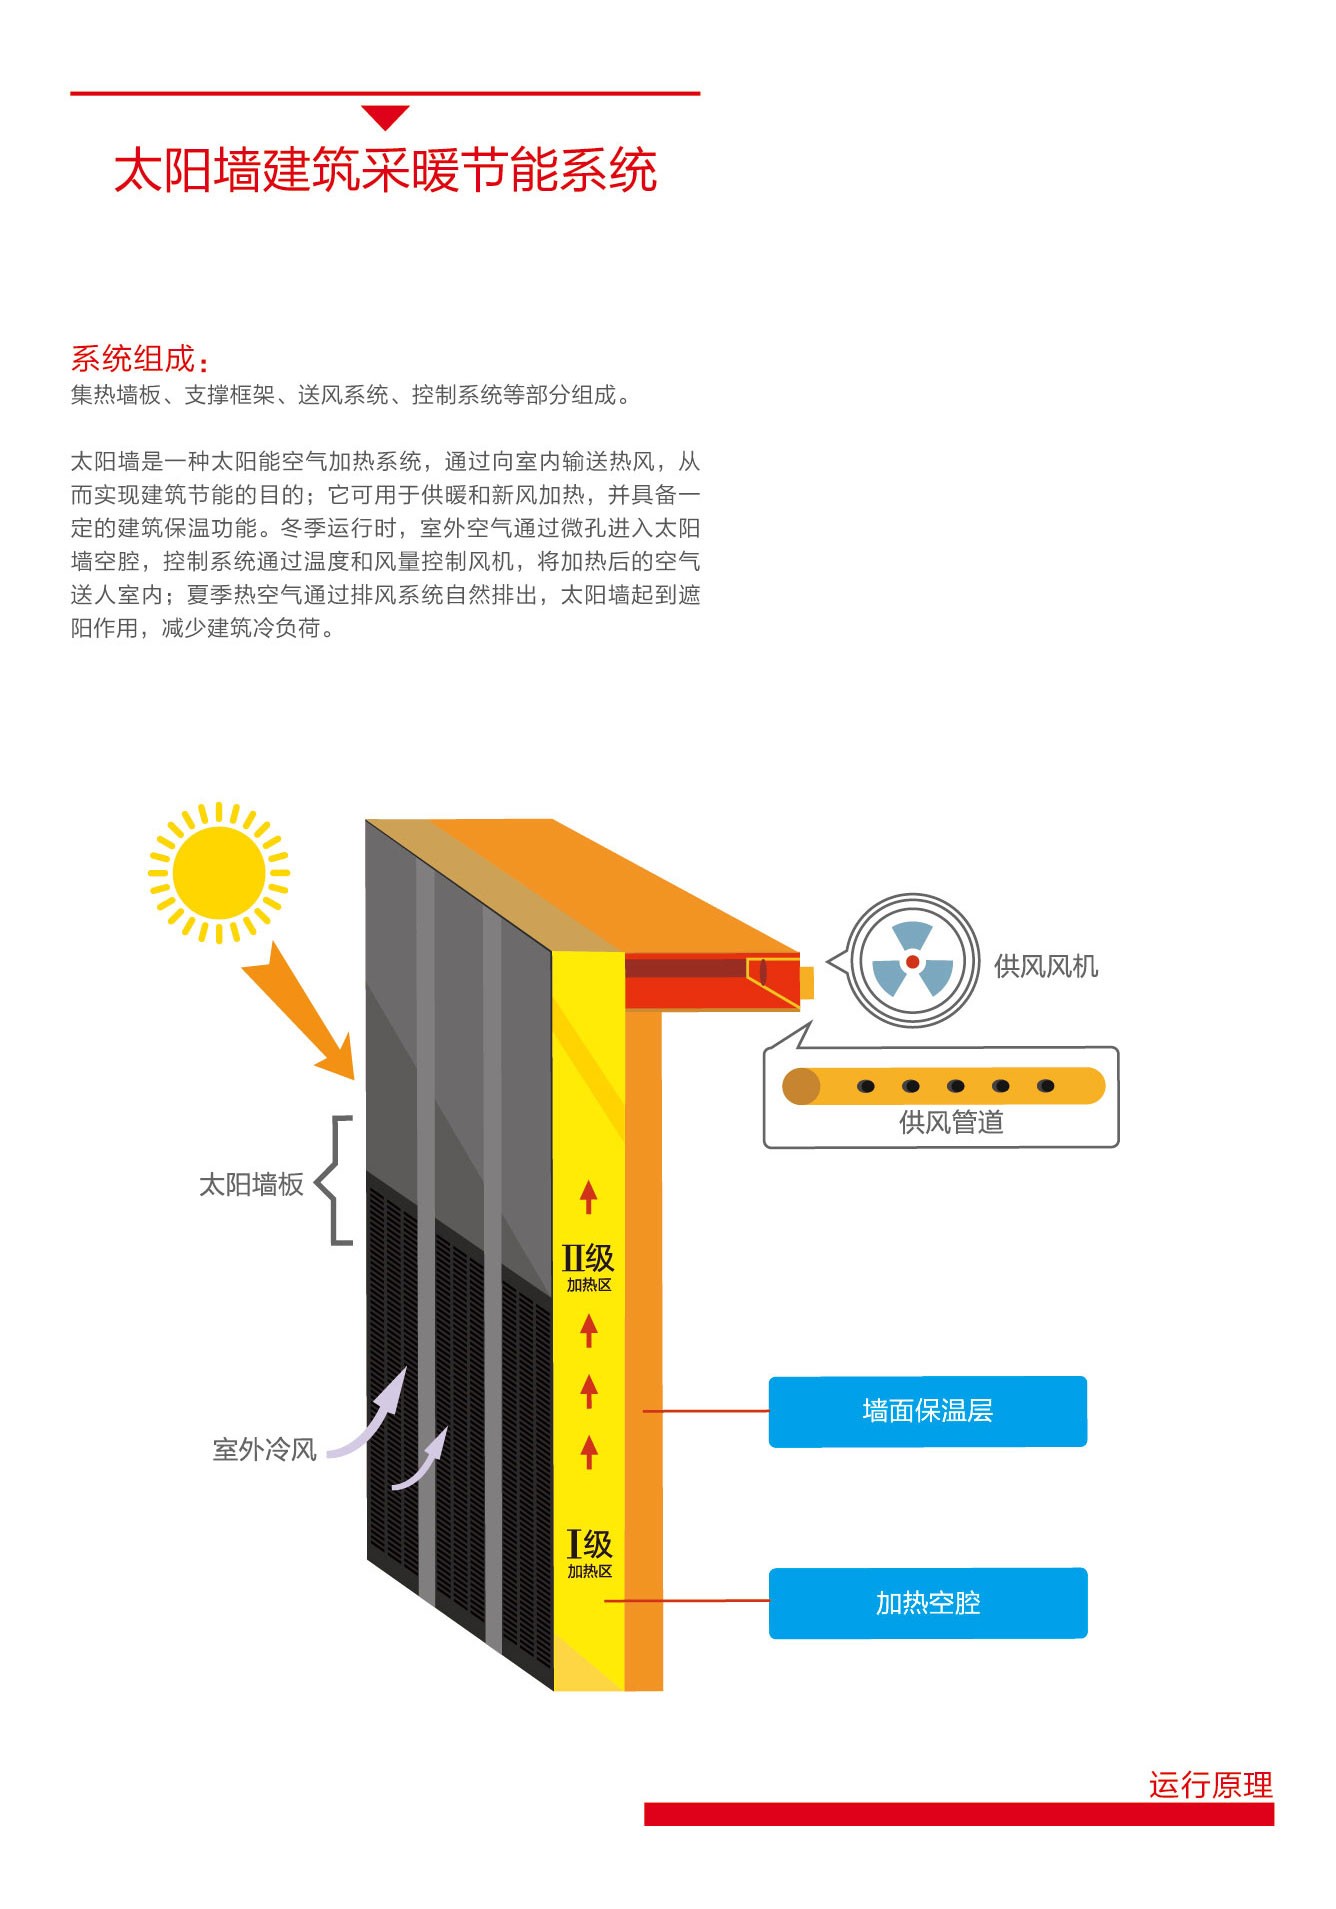 太陽雨太陽能|太陽能熱水器|燃氣熱水器|電熱水器|抽油煙機|燃氣灶具